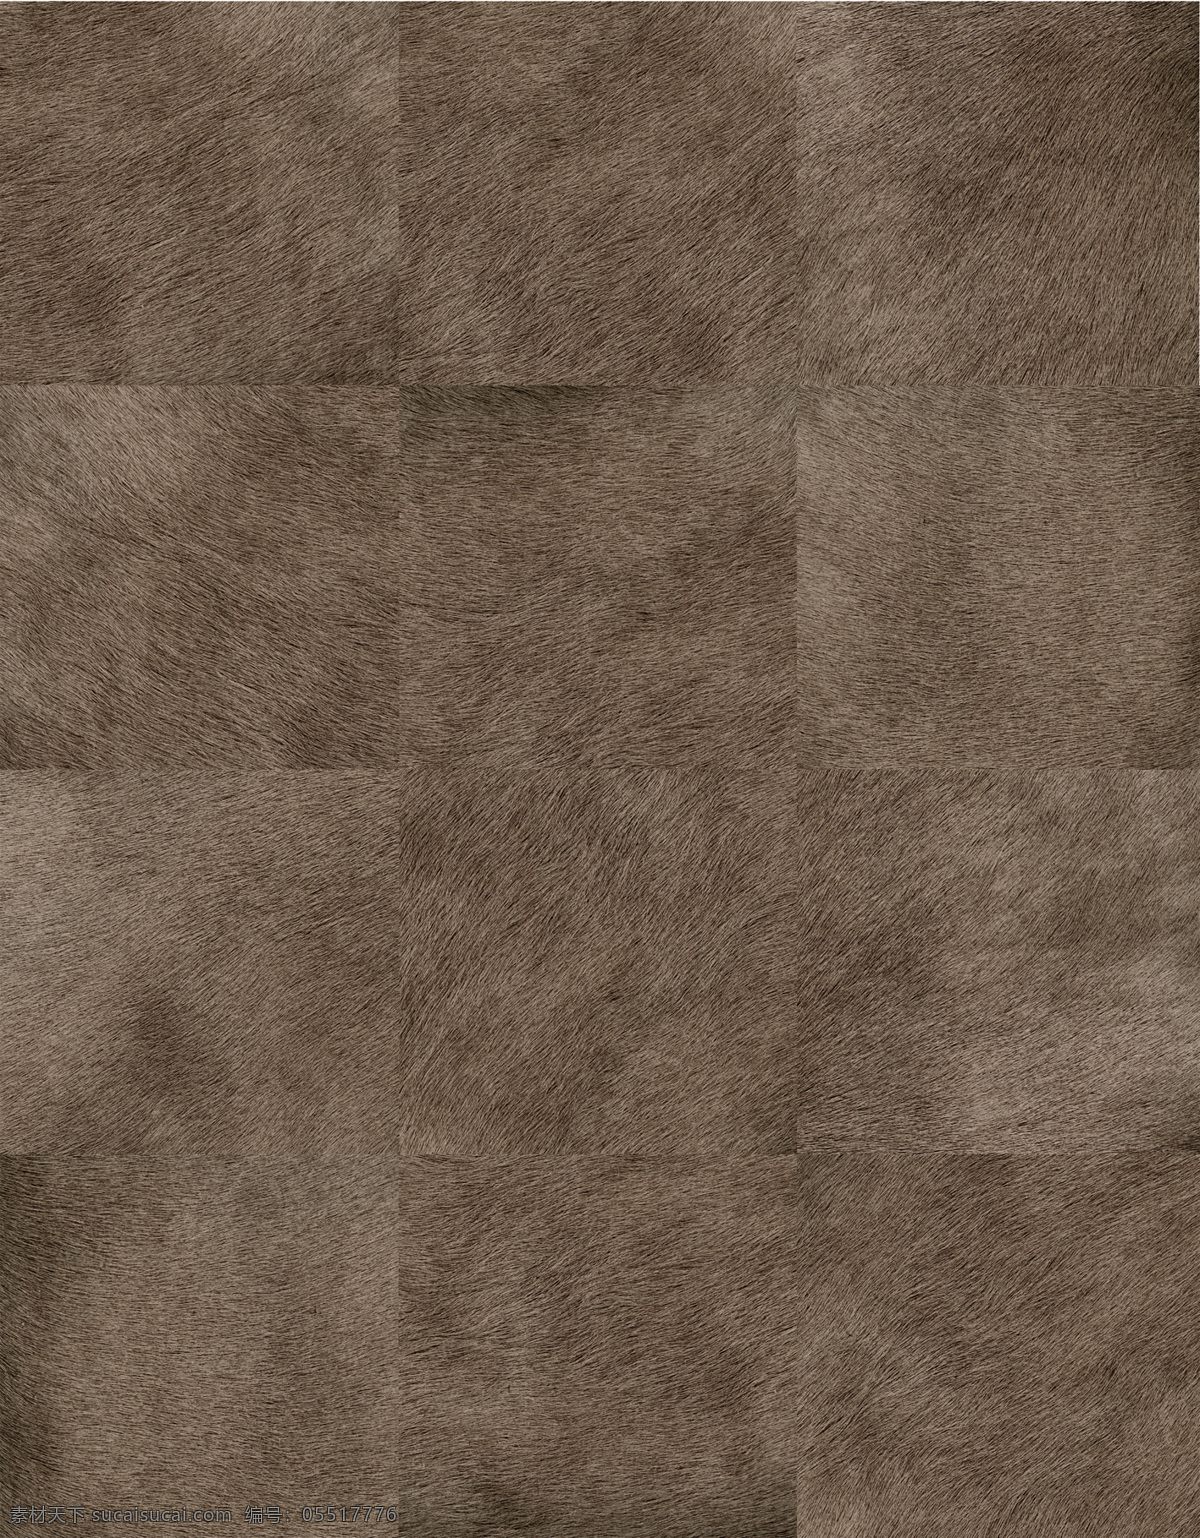 拼接地毯贴图 3d材质贴图 地毯贴图素材 纹理 图案 地毯 材质 贴图 拼接 地毯贴图下载